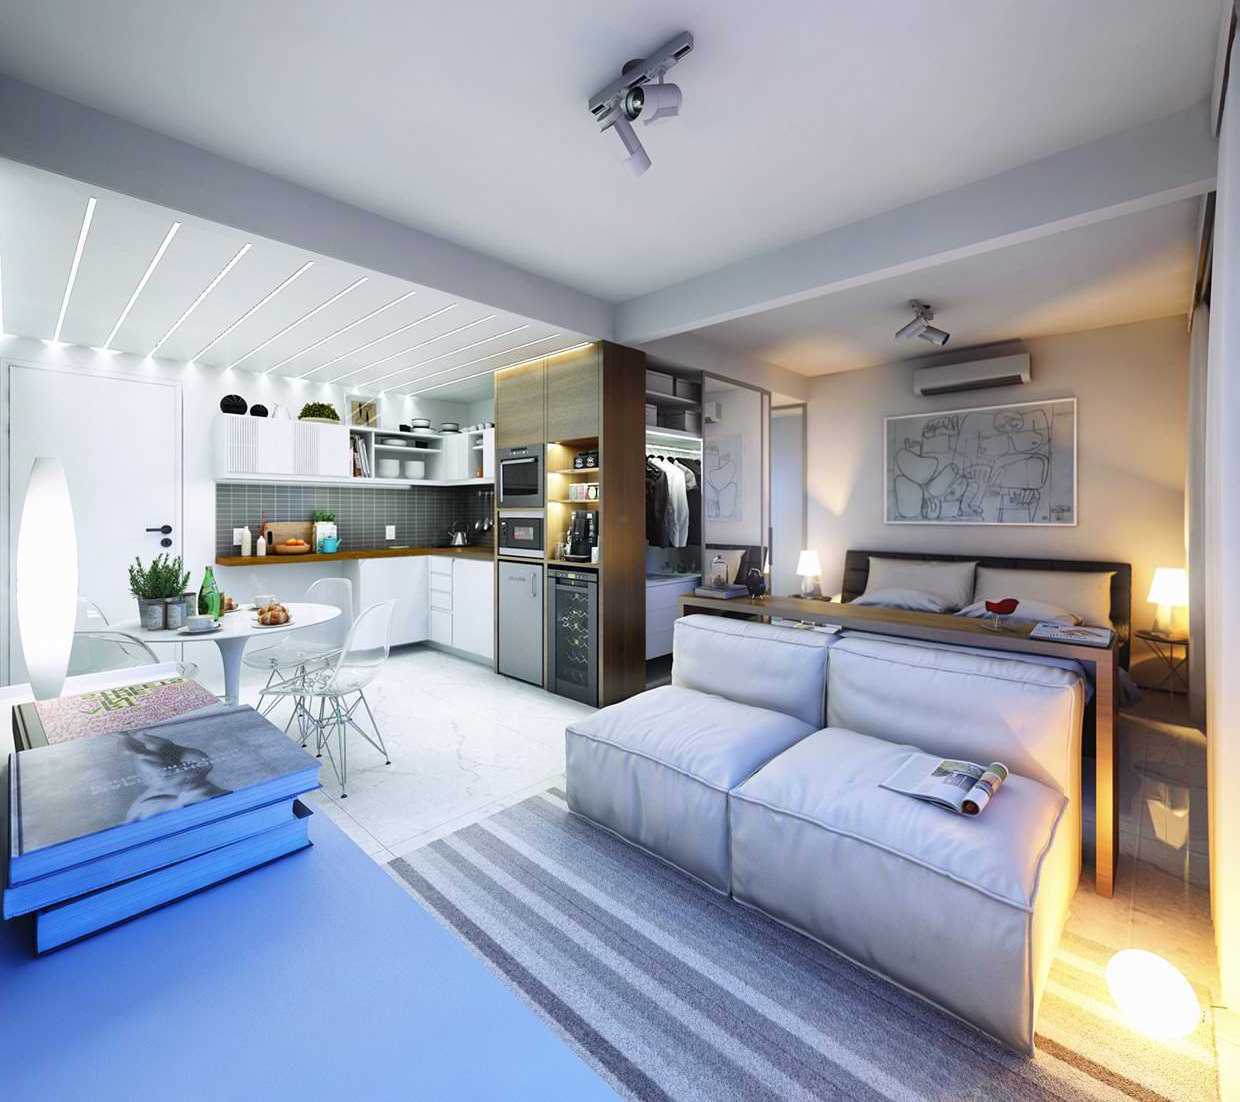 Элегантный интерьер квартиры в светлых тонах - является наиболее выигрышным вариантом для небольшого помещения